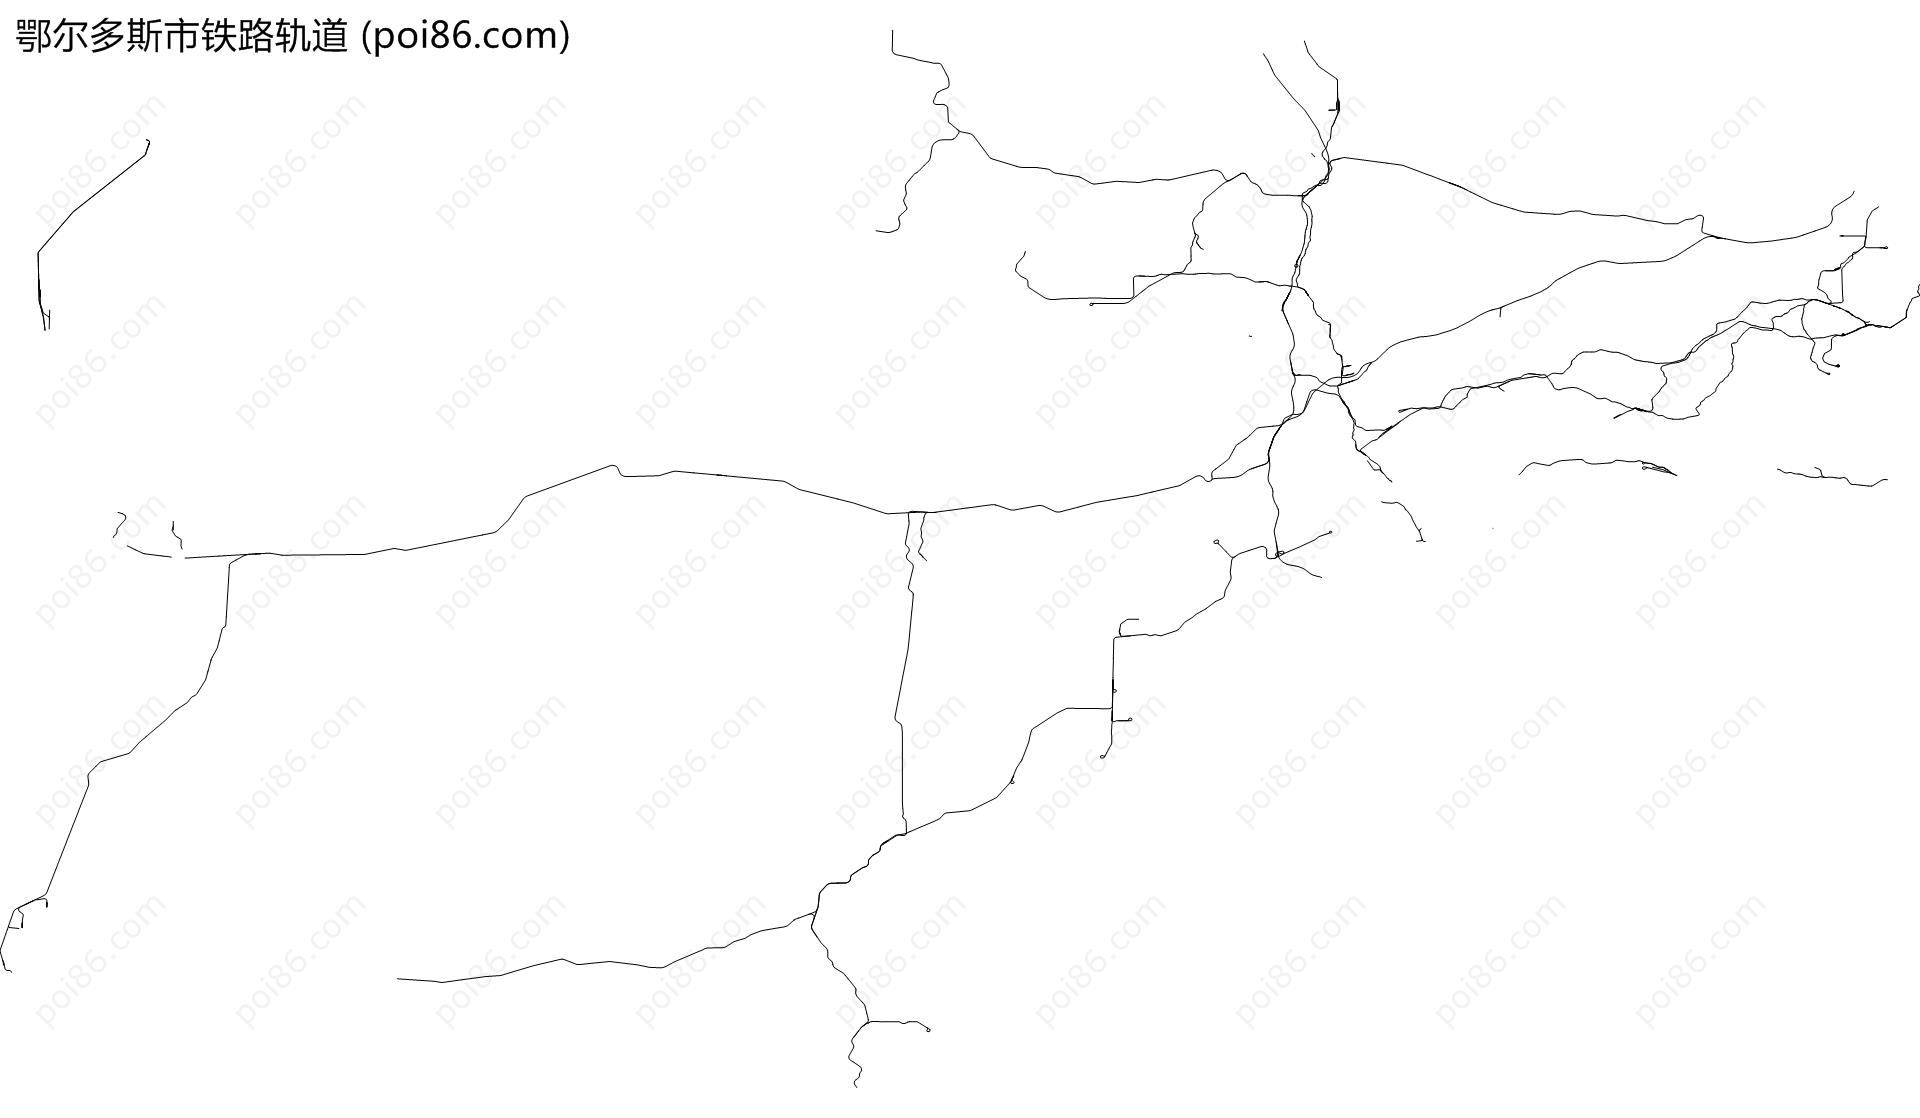 鄂尔多斯市铁路轨道地图